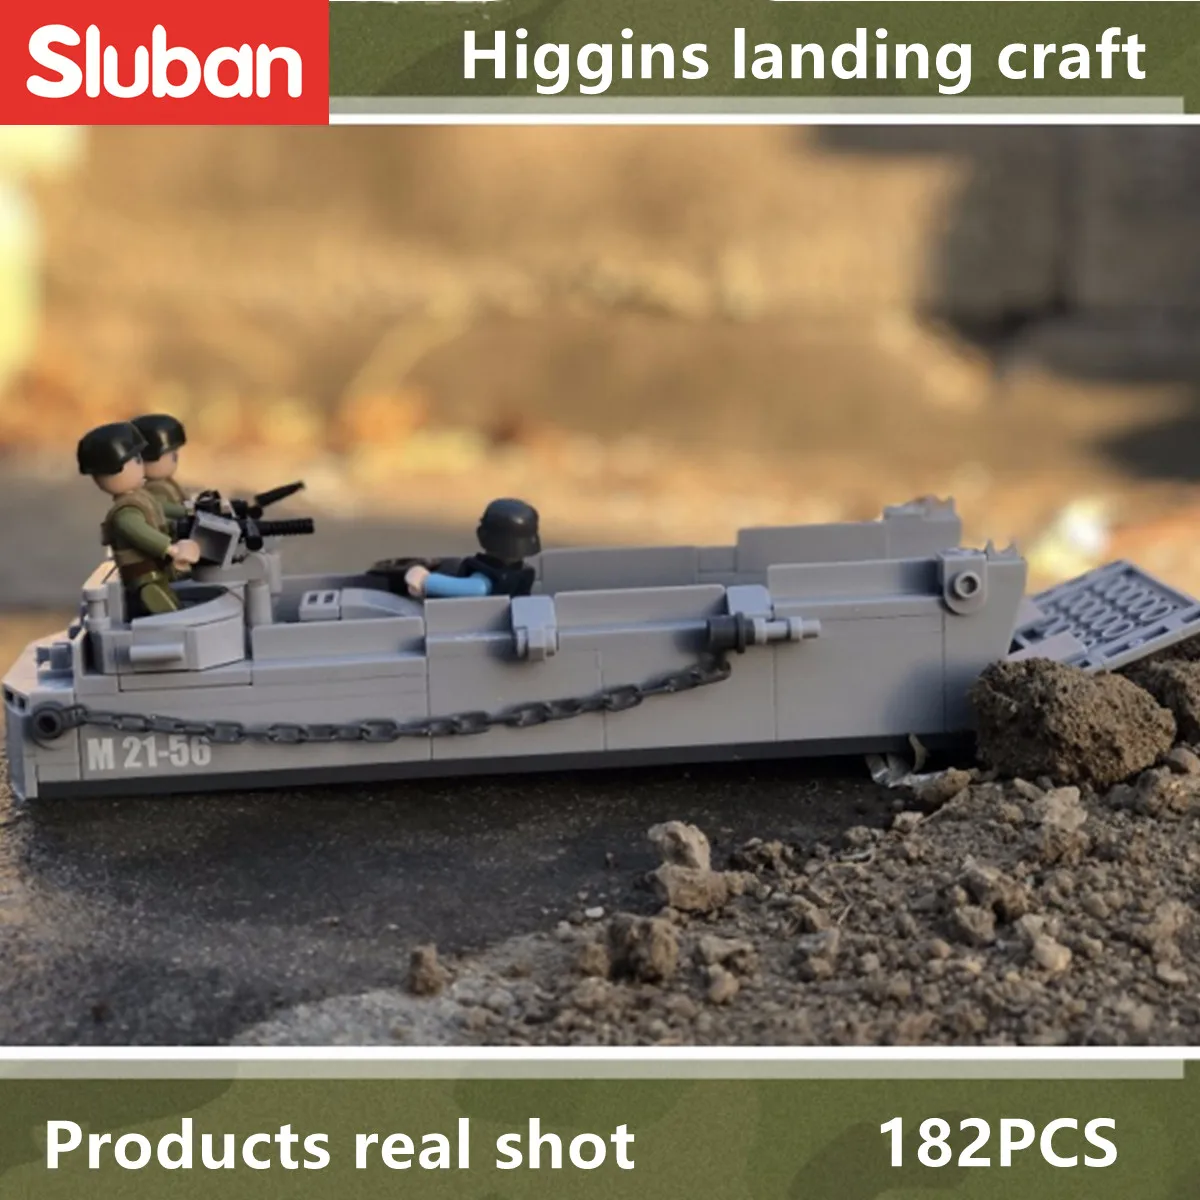 Конструктор Sluban игрушки WW2 армия Хиггинс посадка 182 шт. кирпичей B0855 военное